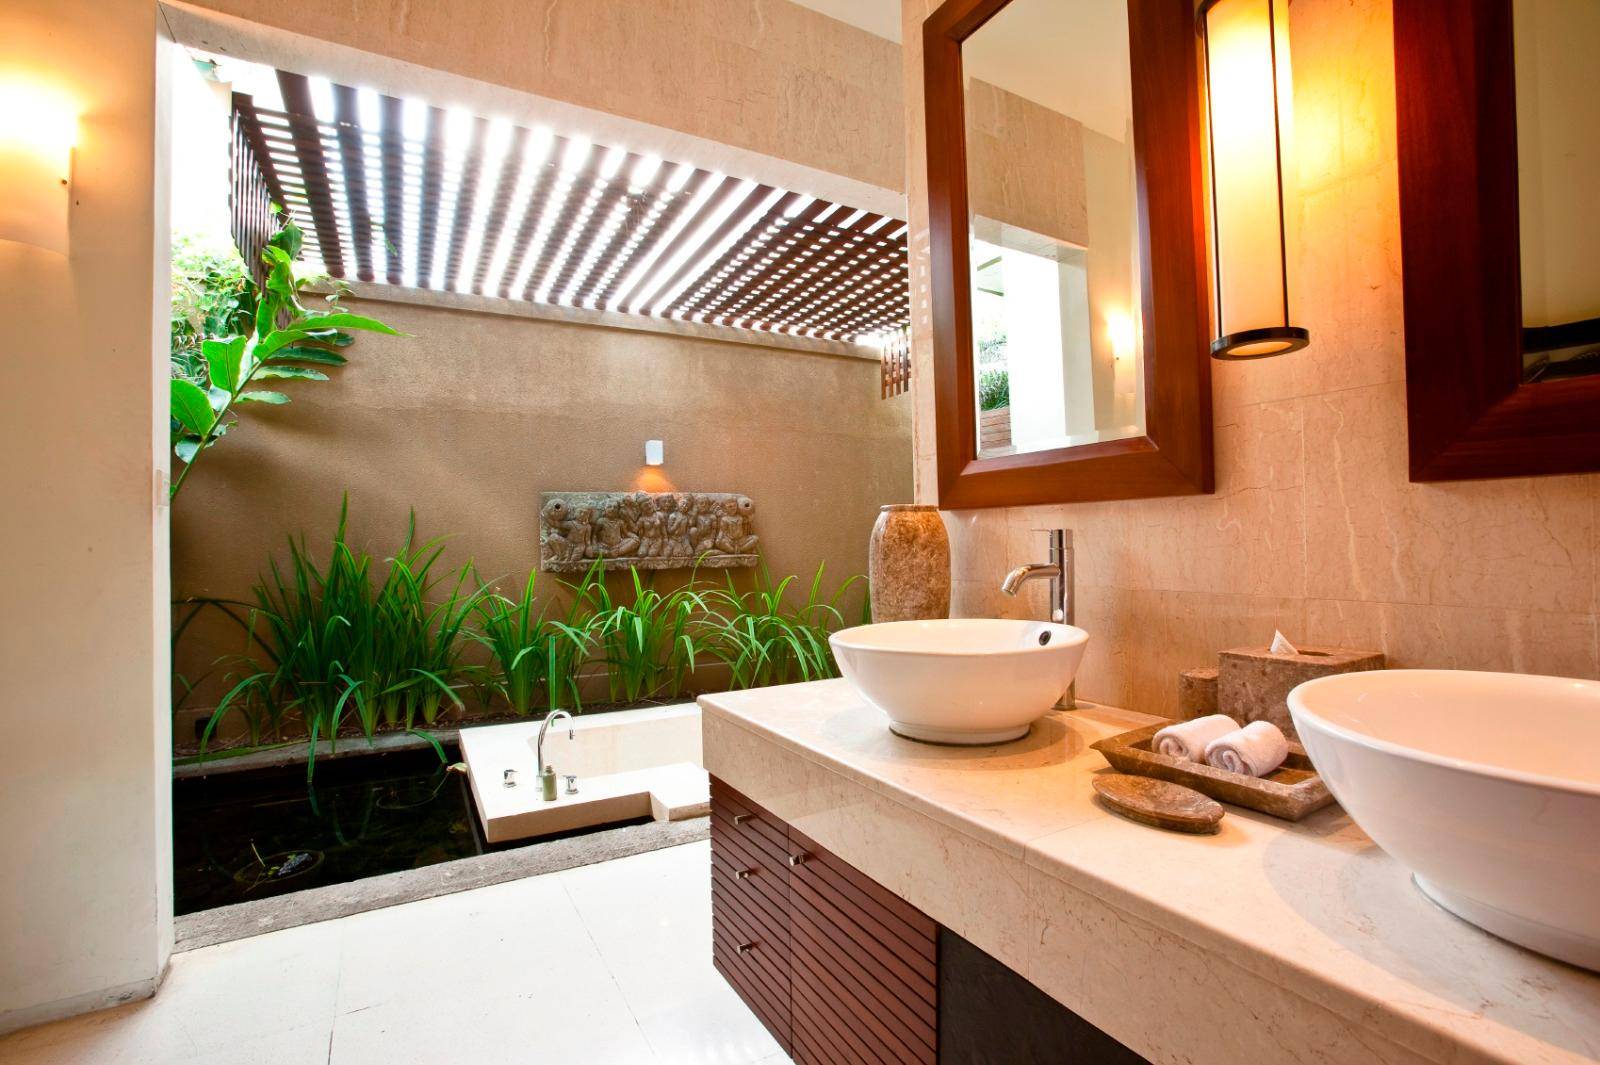 Ванная комната в стиле неоклассика: 6 правил оформления — roomble.com